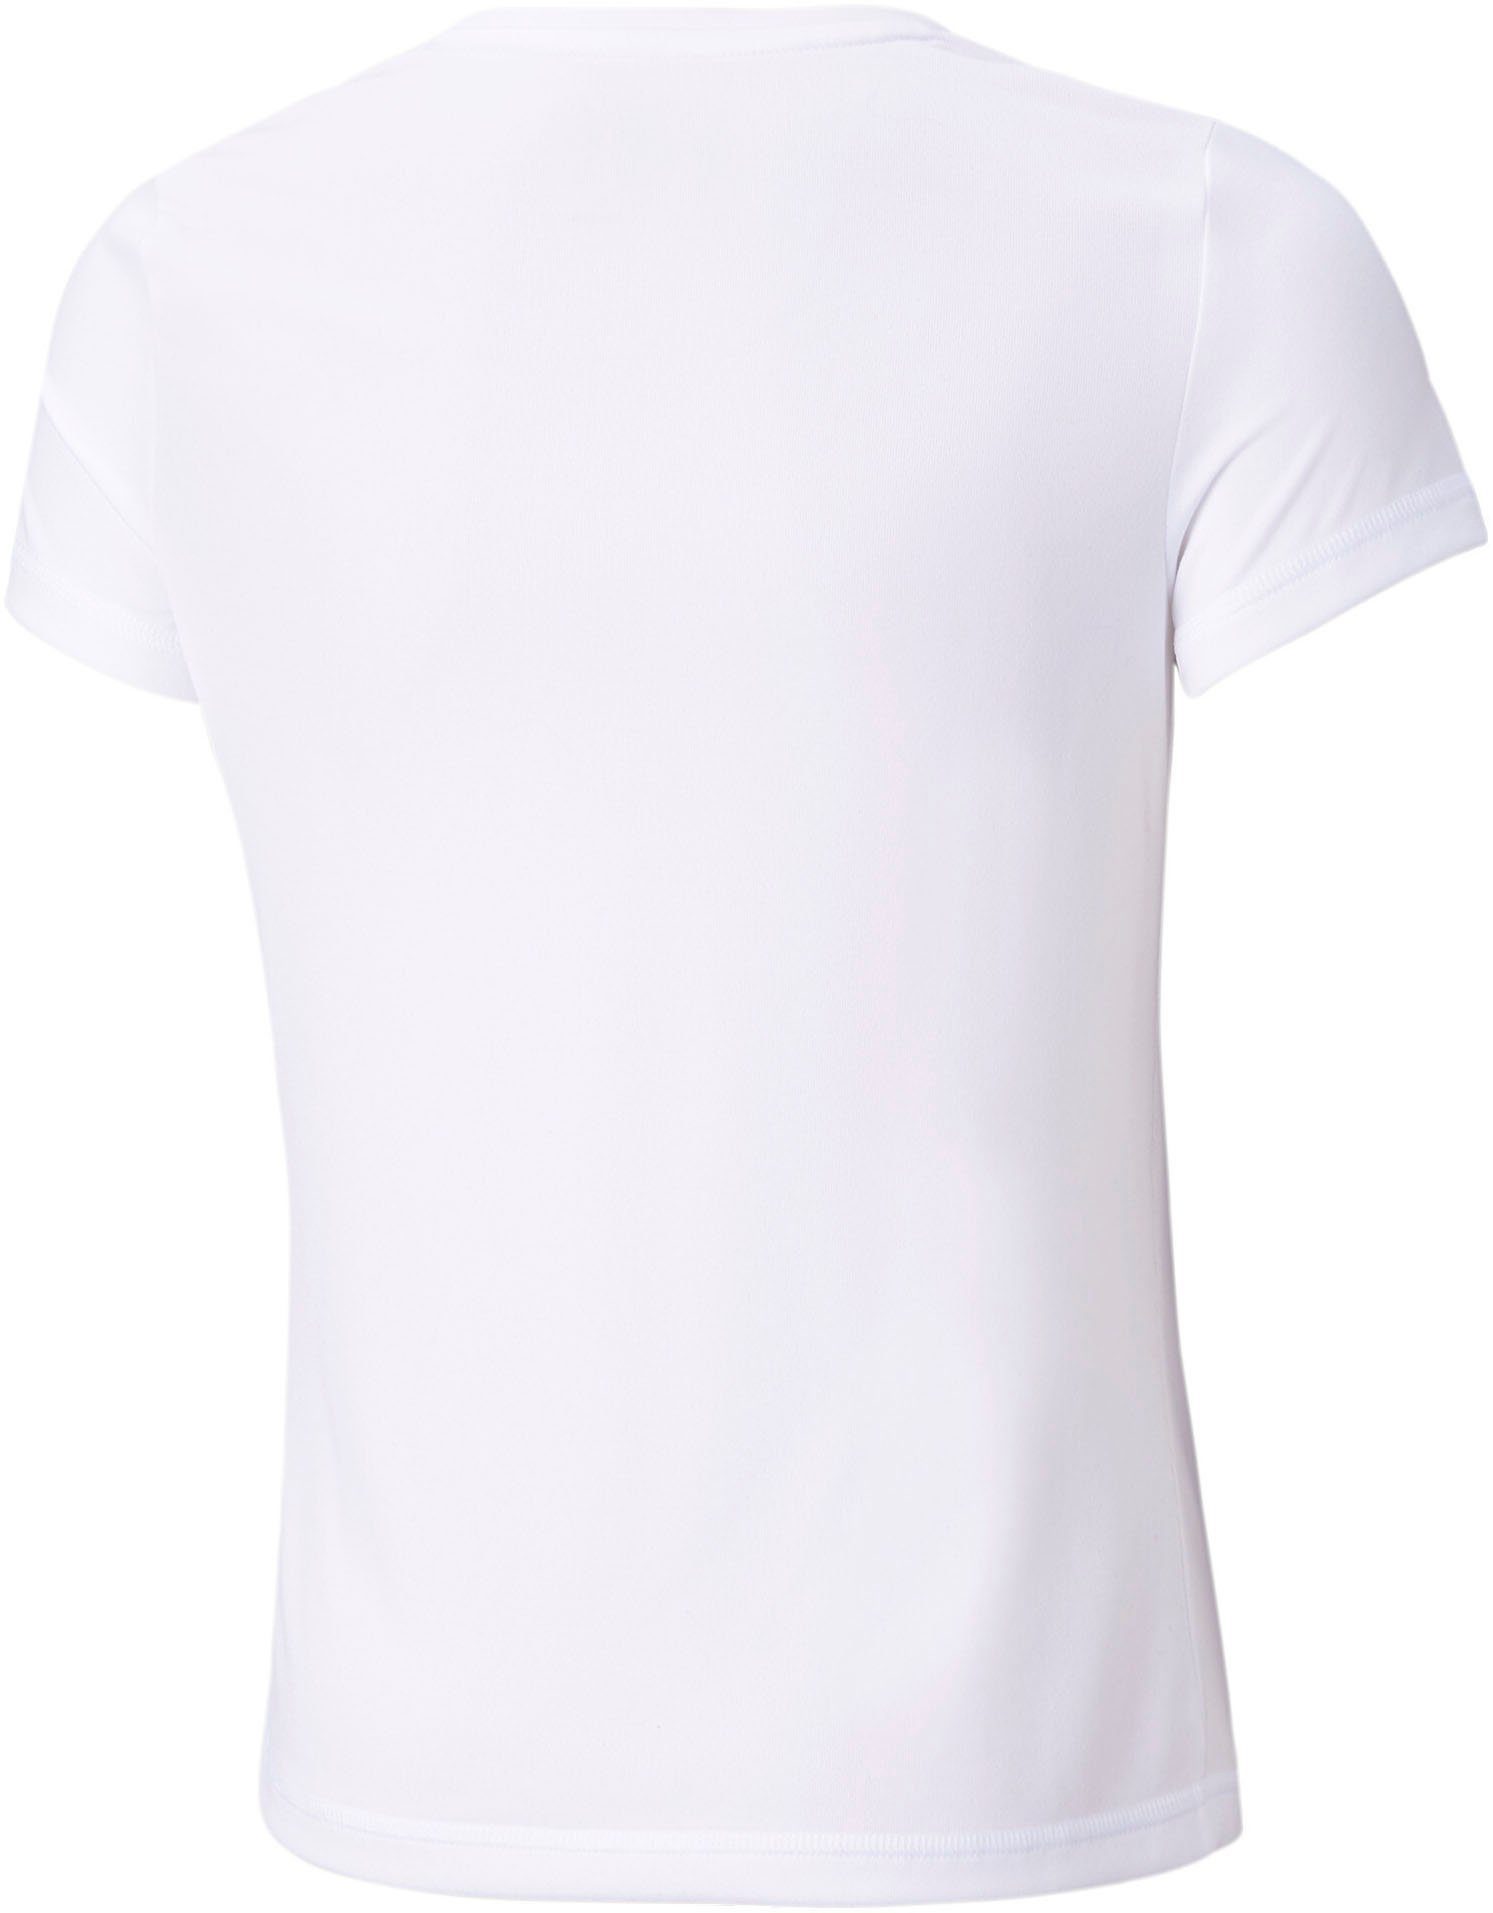 PUMA T-Shirt White G TEE ACTIVE Puma